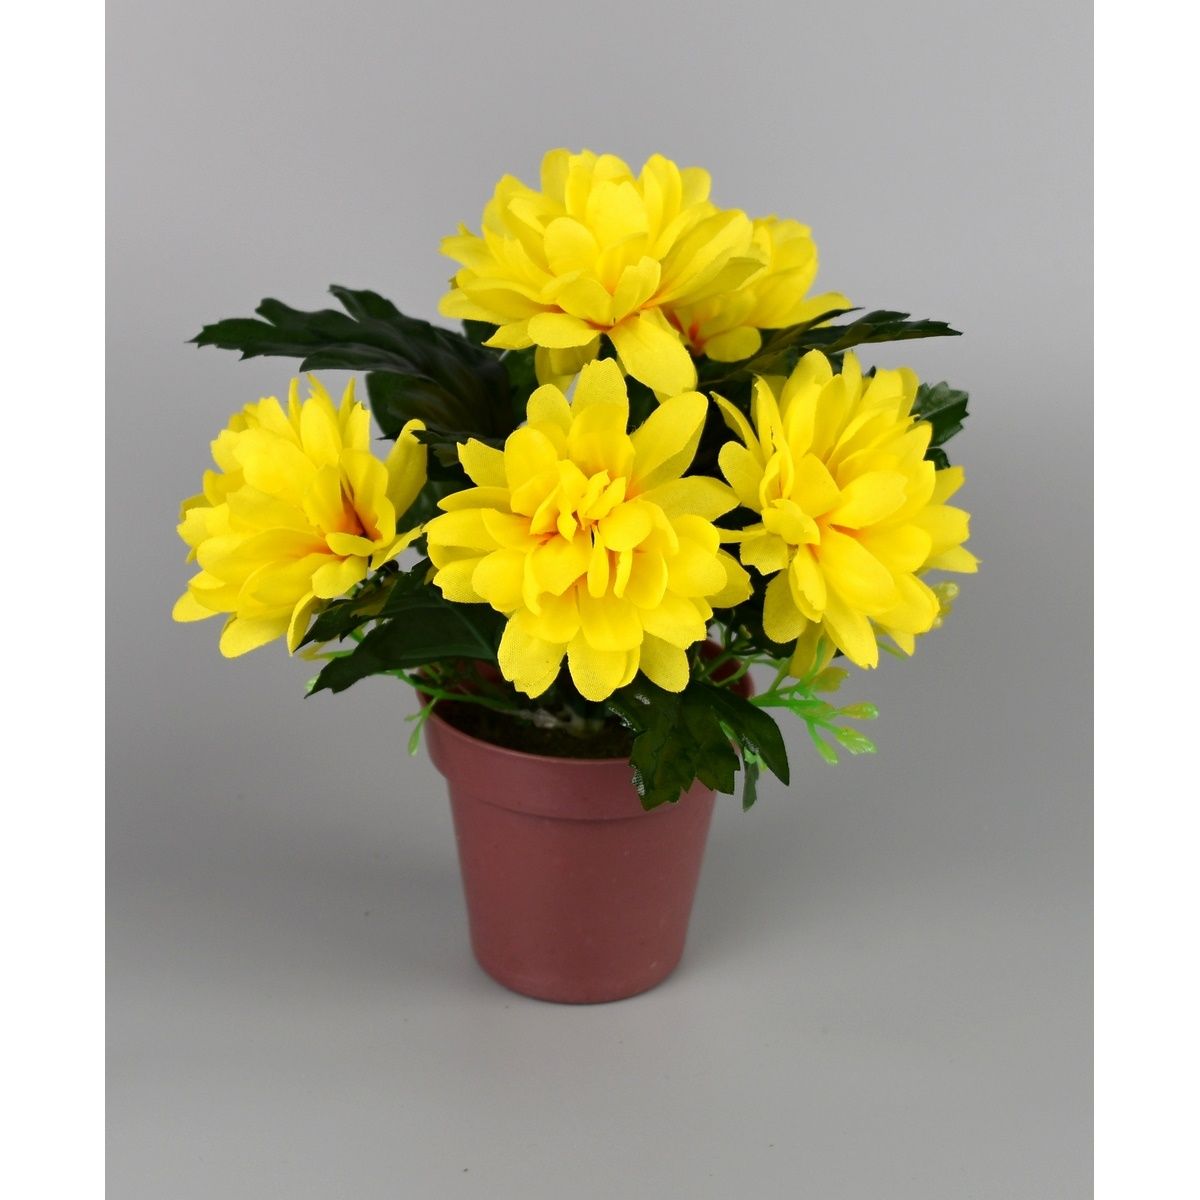 Umělá květina Chrysantéma v květináči 16 x 14 cm, žlutá - 4home.cz